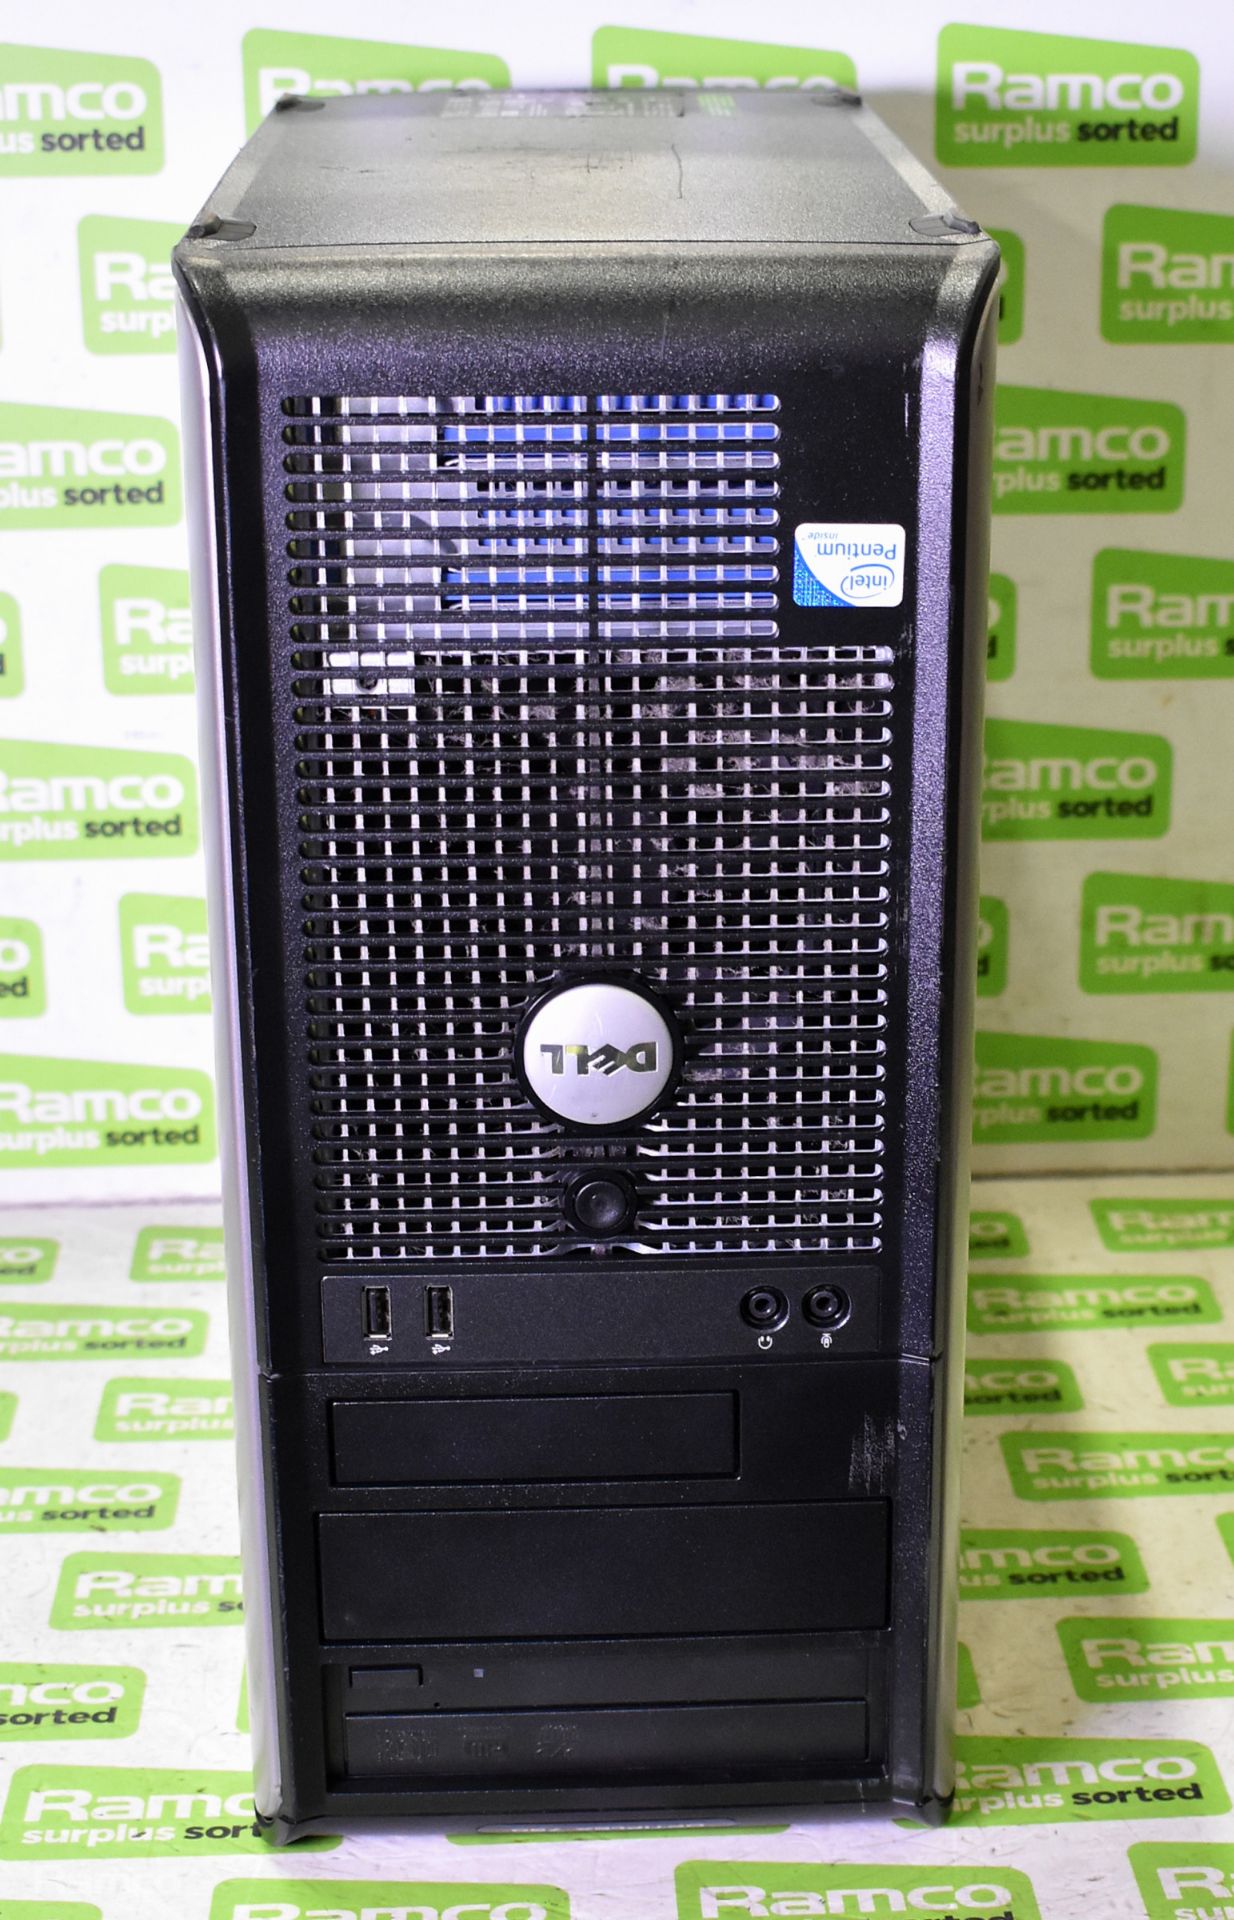 Dell Optiplex 780 computer - no hard drive